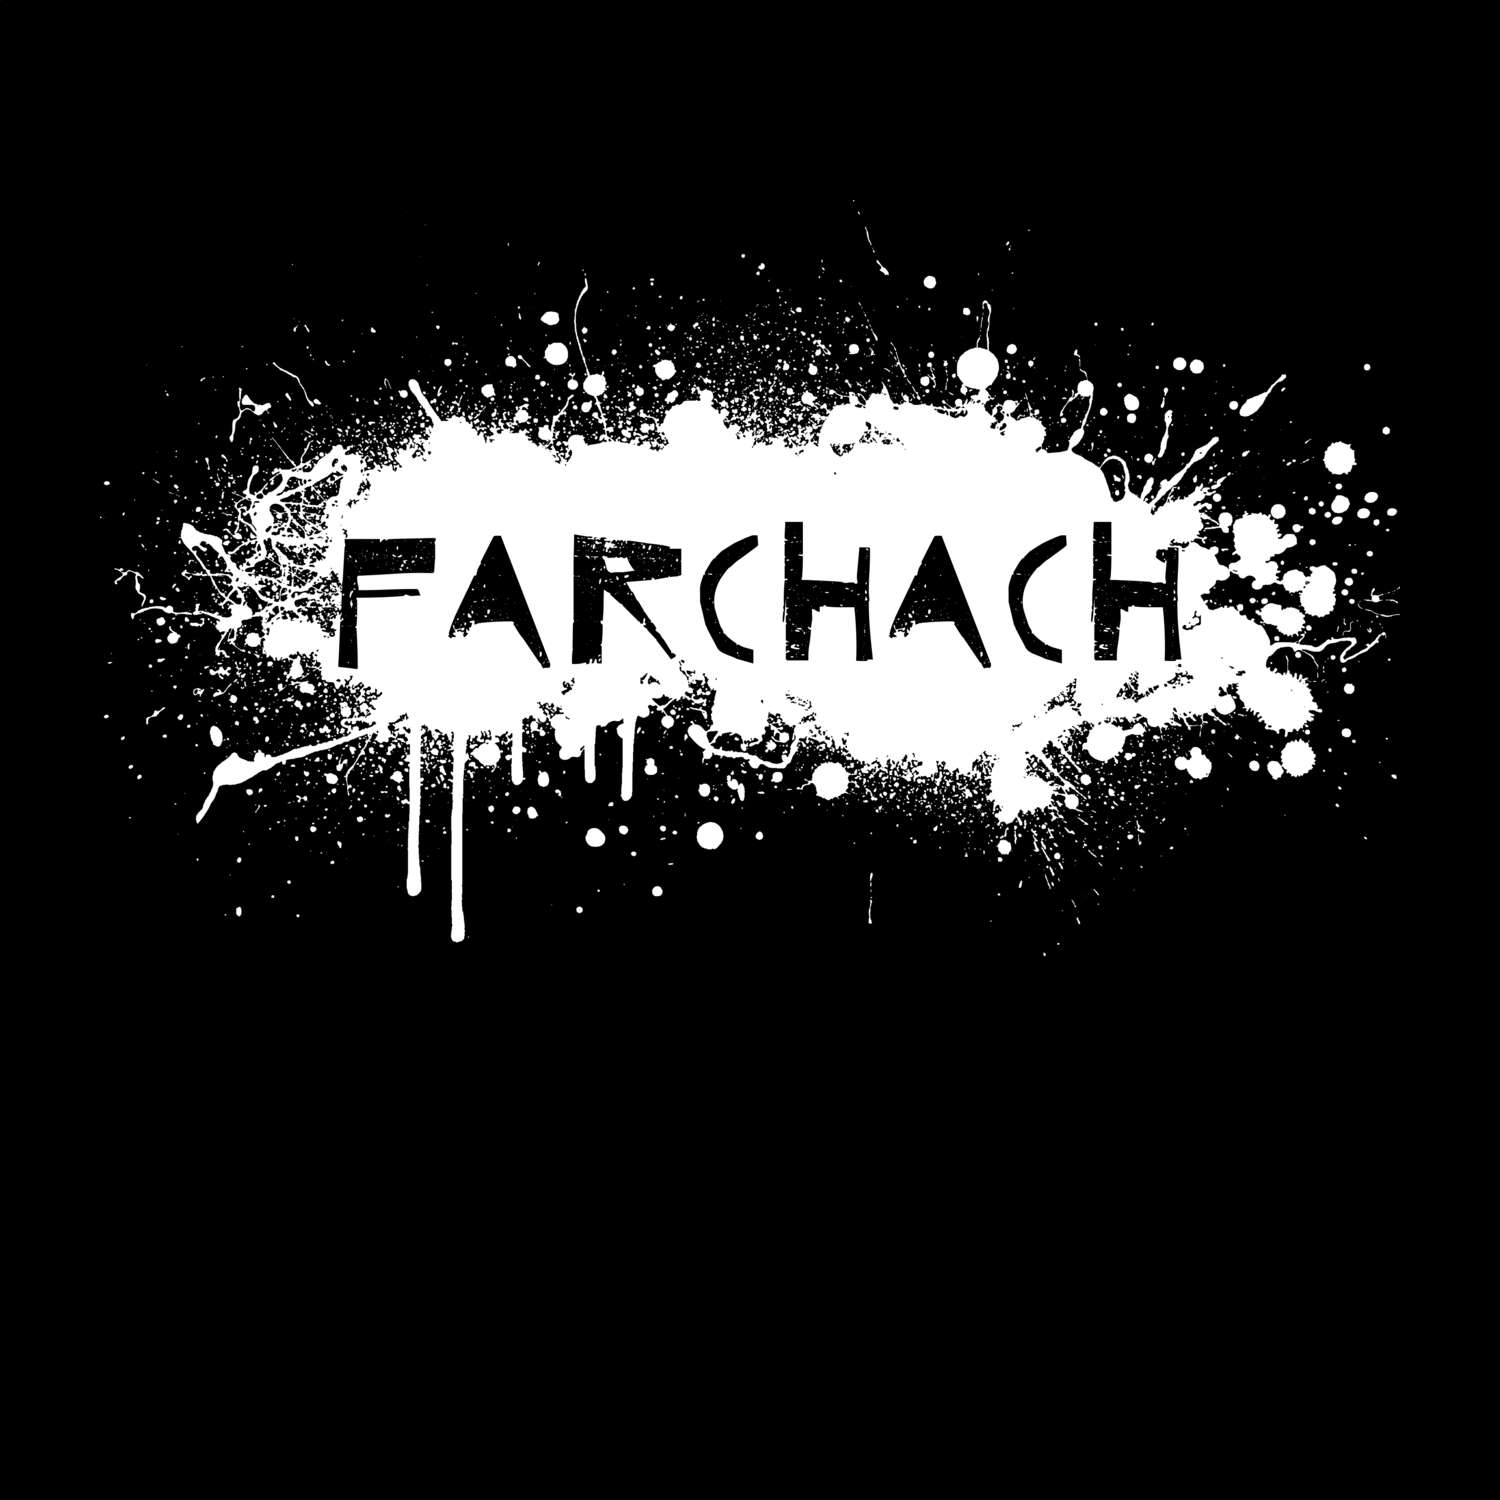 Farchach T-Shirt »Paint Splash Punk«